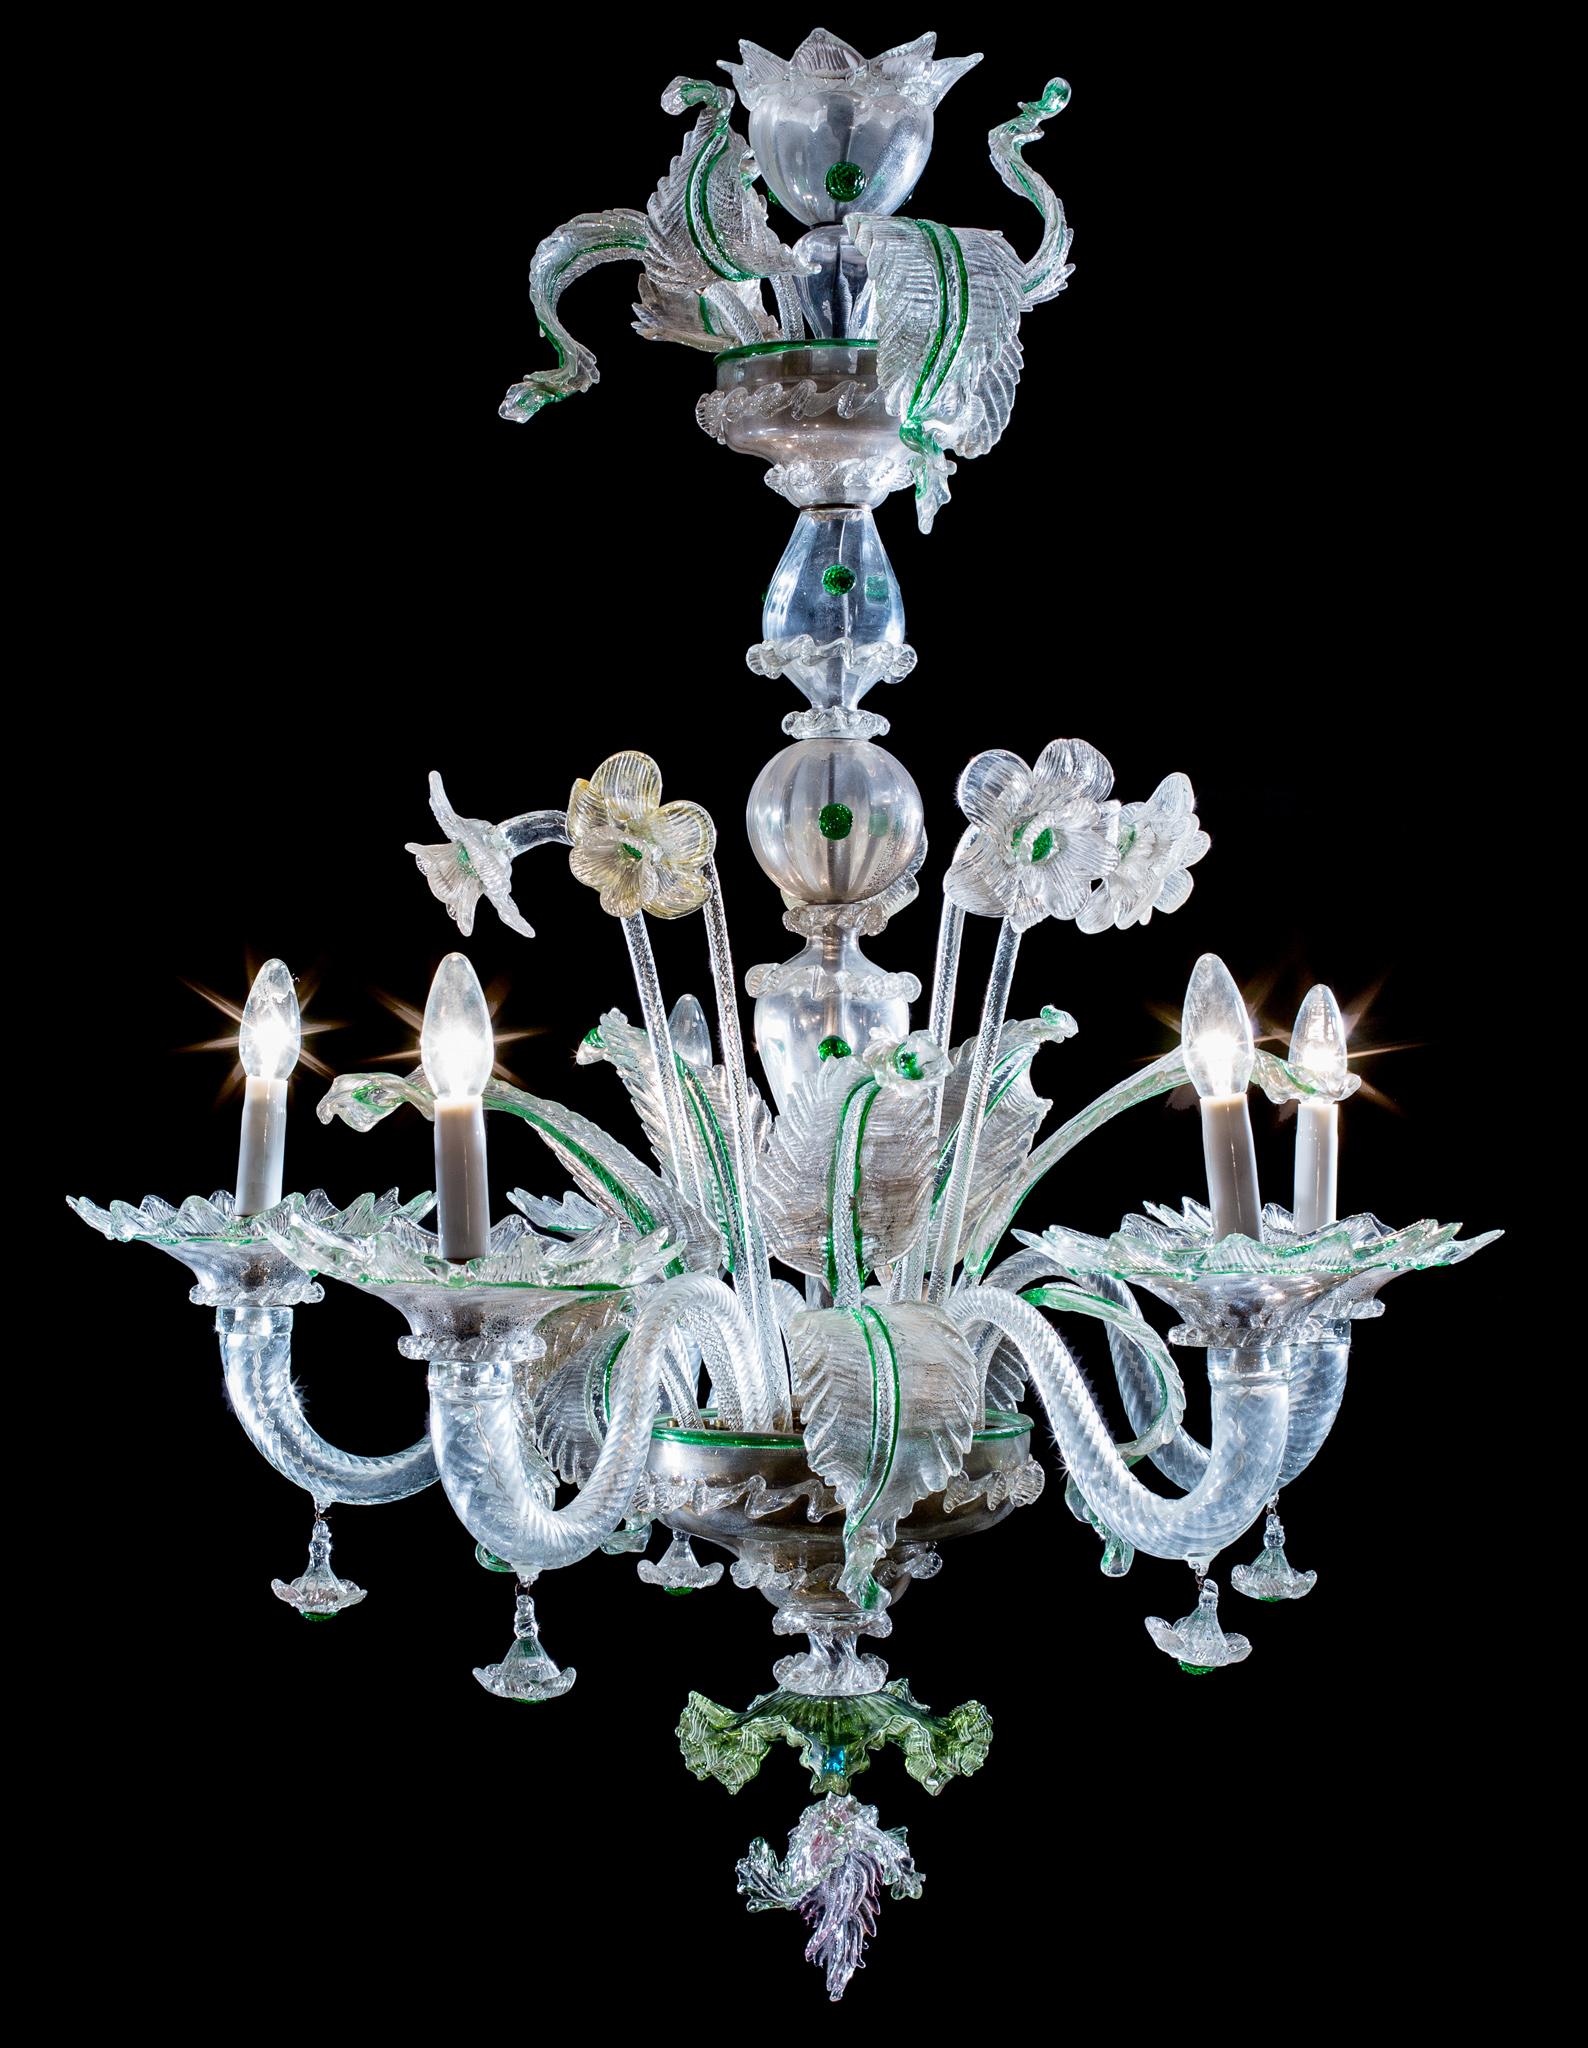 Cette lampe est un bel exemple de l'incomparable style Murano, qui mélange la structure classique d'un lustre avec un axe central composé de balustres et de fuseaux empilés soufflés à la main, avec une variété de formes florales et foliacées plus